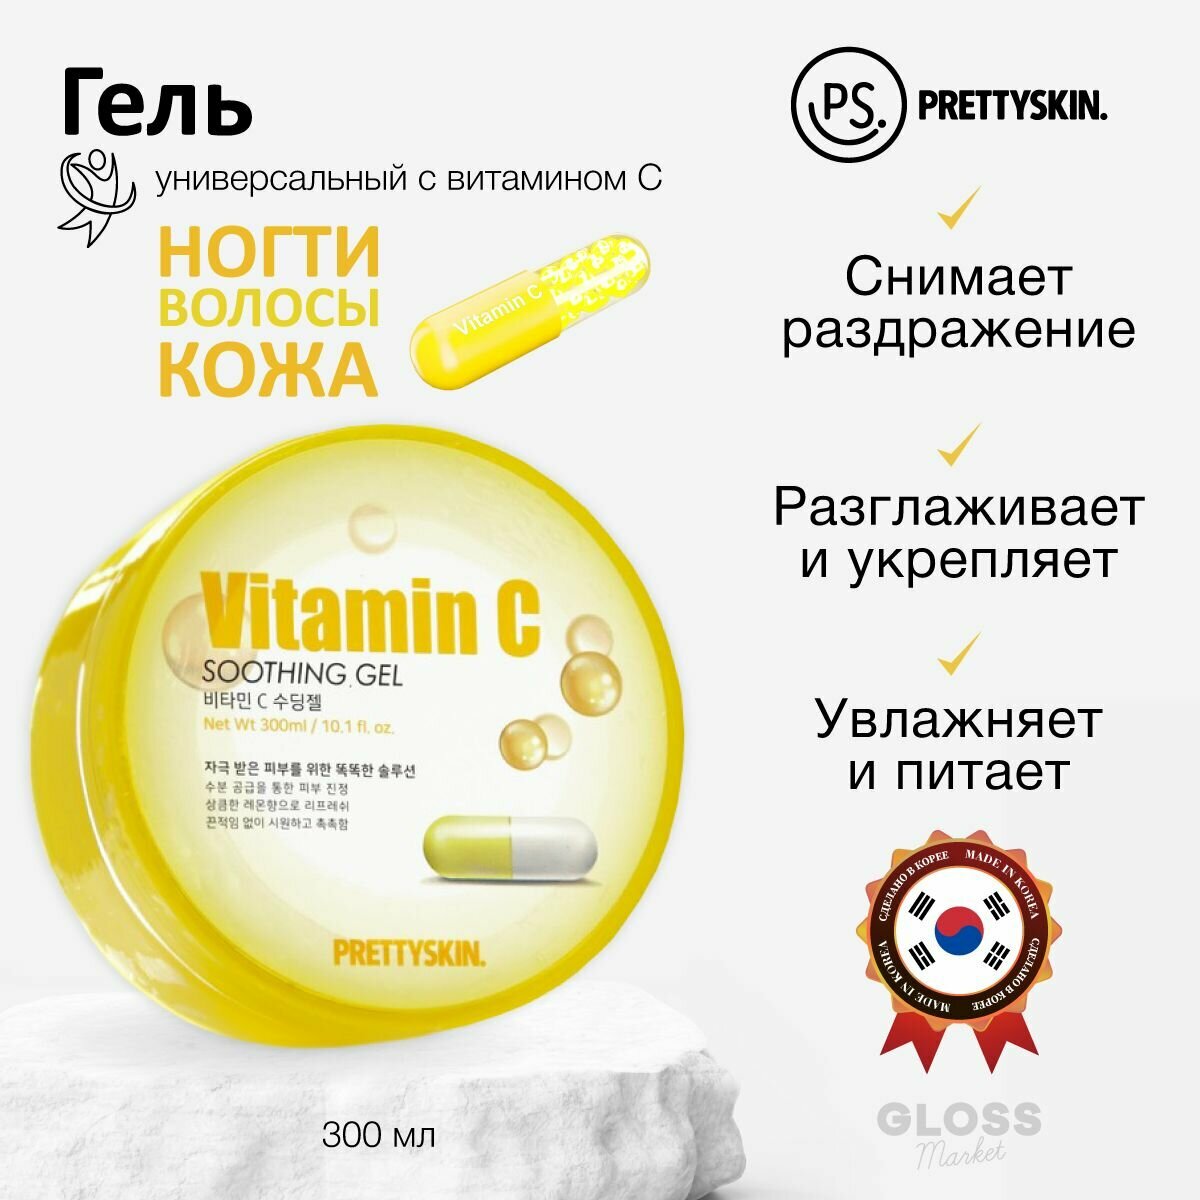 PrettySkin Гель для тела лица многофункциональный увлажняющий успокаивающий с витамином С 300 мл Корейская косметика